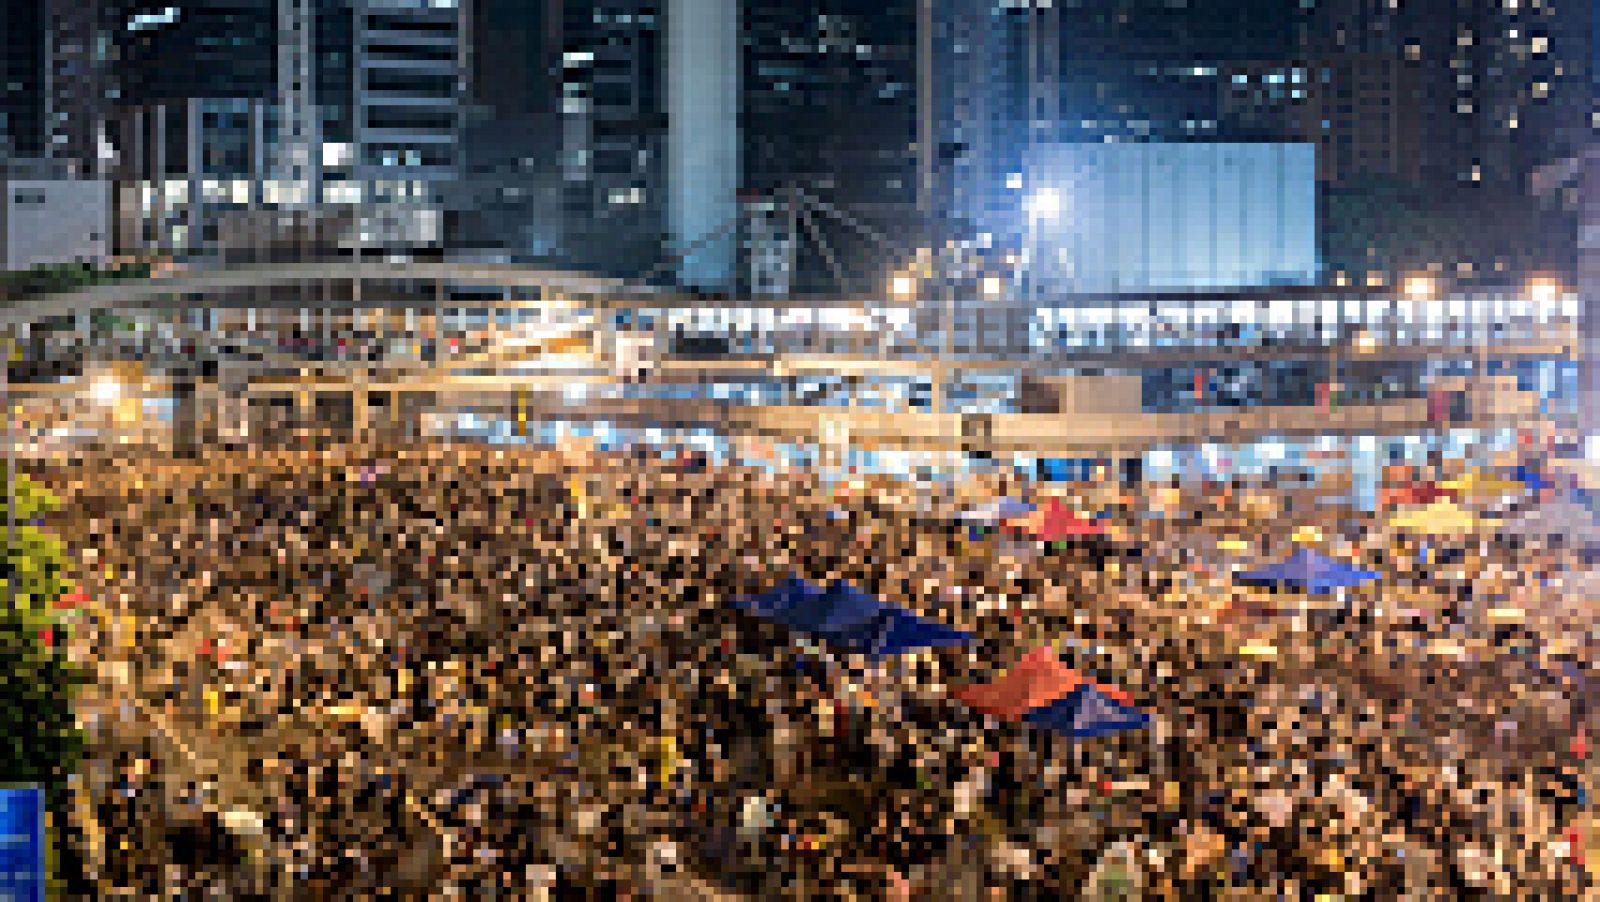  La ruptura del diálogo con el Gobierno por parte de los estudiantes de Hong Kong a causa de los ataques de grupos leales a Pekín contra los manifestantes deja en la incertidumbre la búsqueda de una solución negociada a las protestas prodemocráticas.